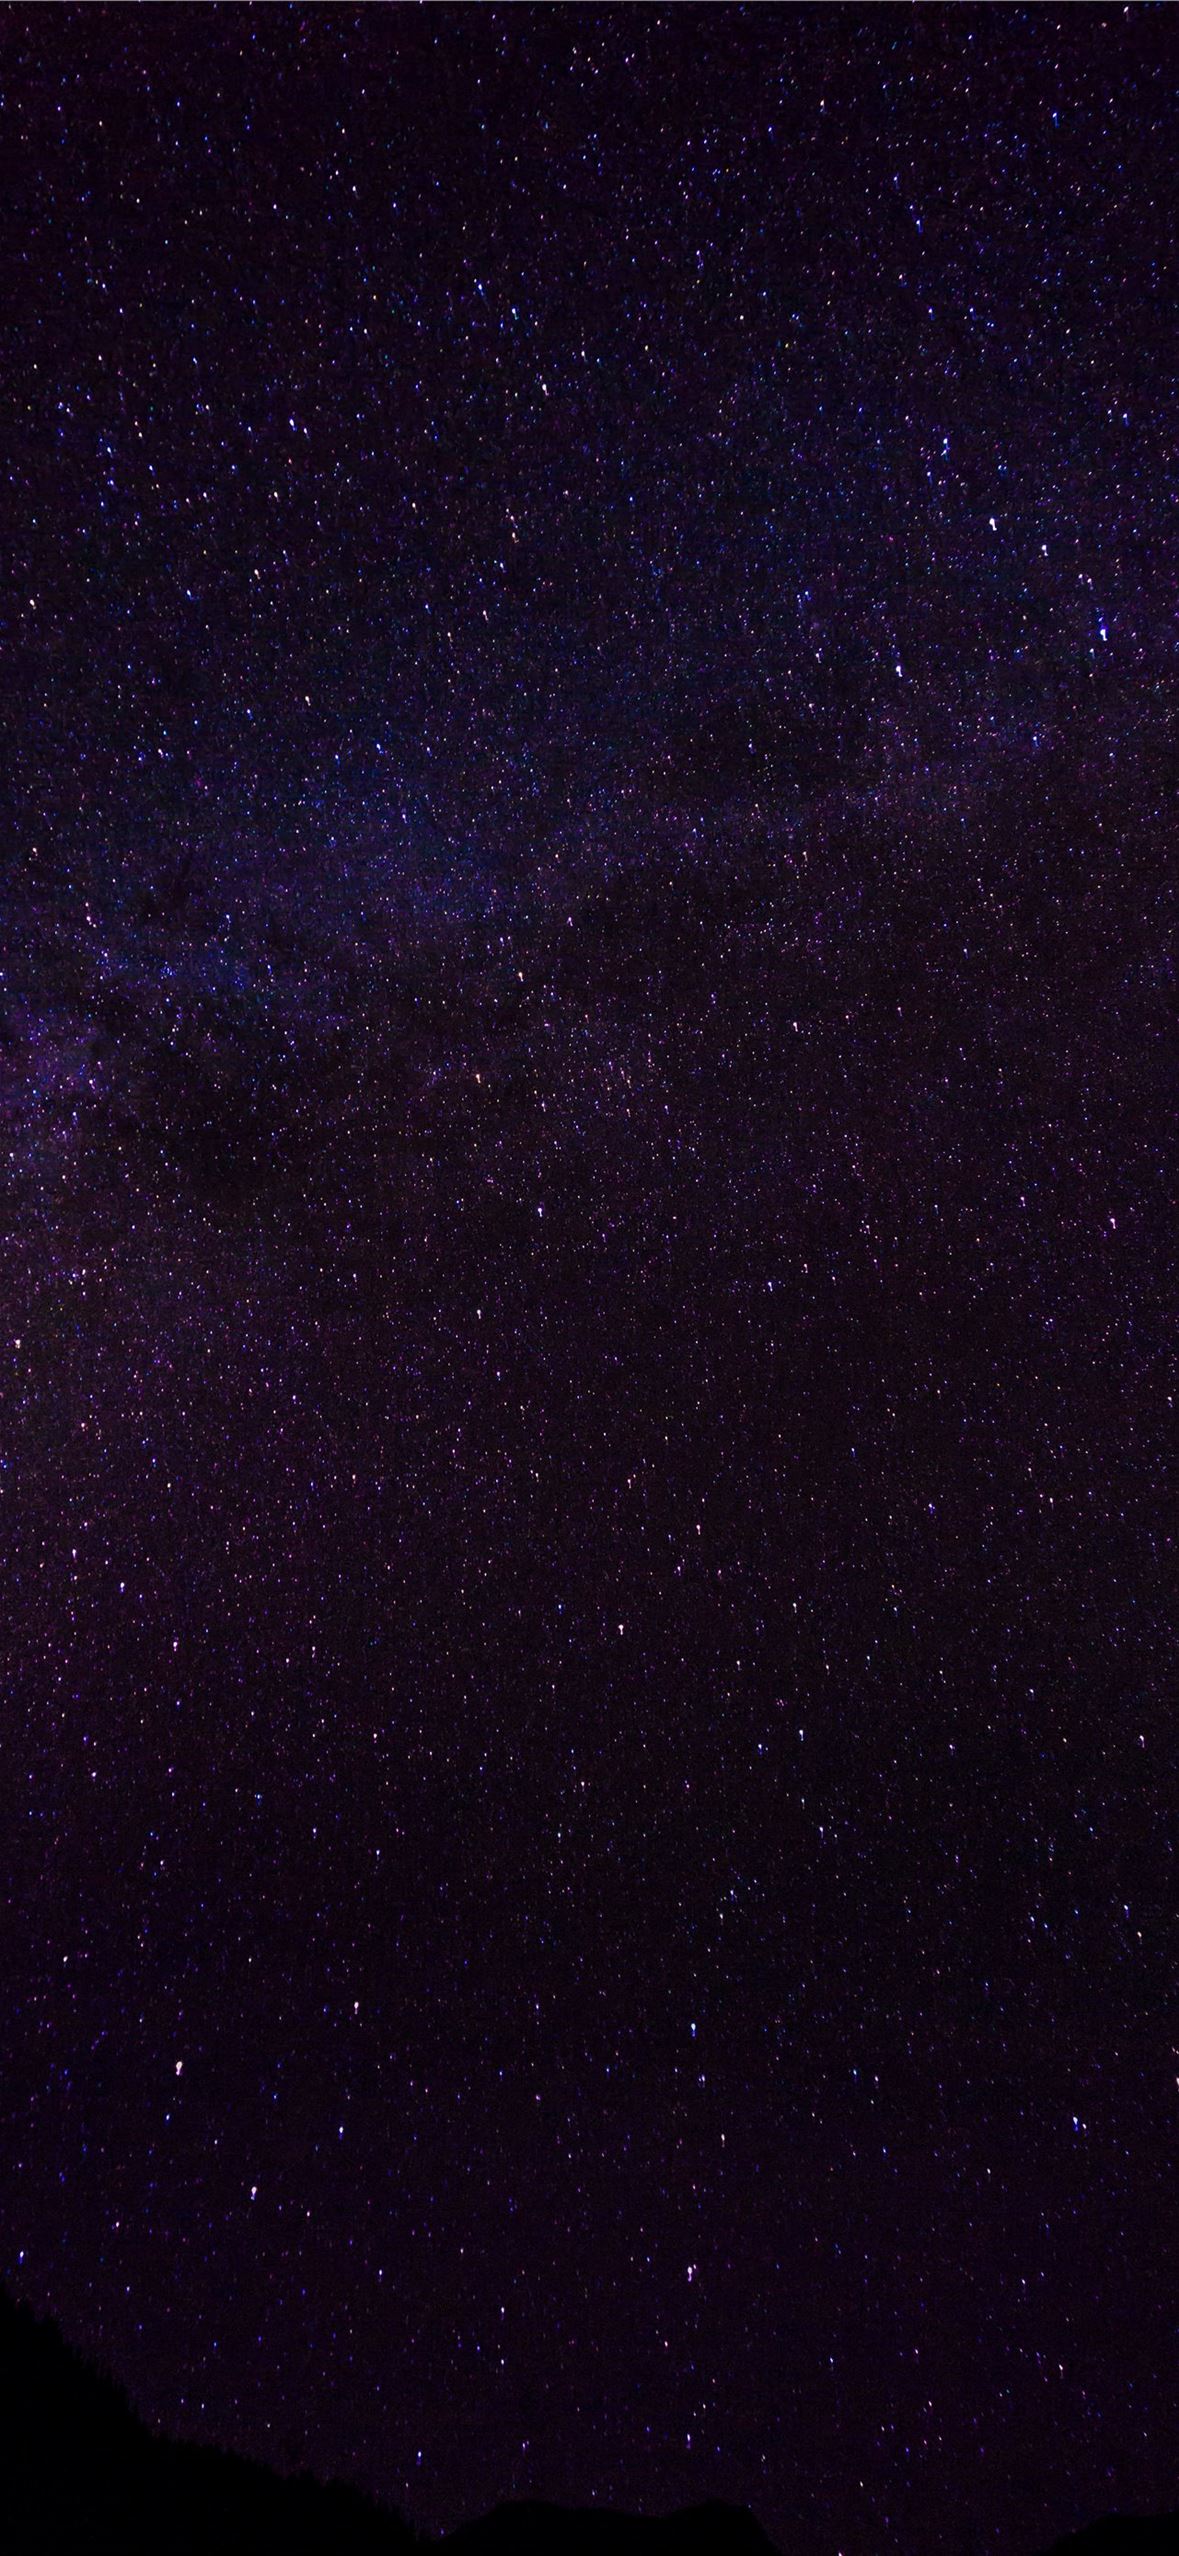 Khám phá hình nền điện thoại vũ trụ màu tím nổi bật và tươi sáng, giúp trang trí cho điện thoại của bạn trở nên độc đáo. Cho một cái nhìn gần gũi hơn vào vũ trụ với hình ảnh sặc sỡ này.